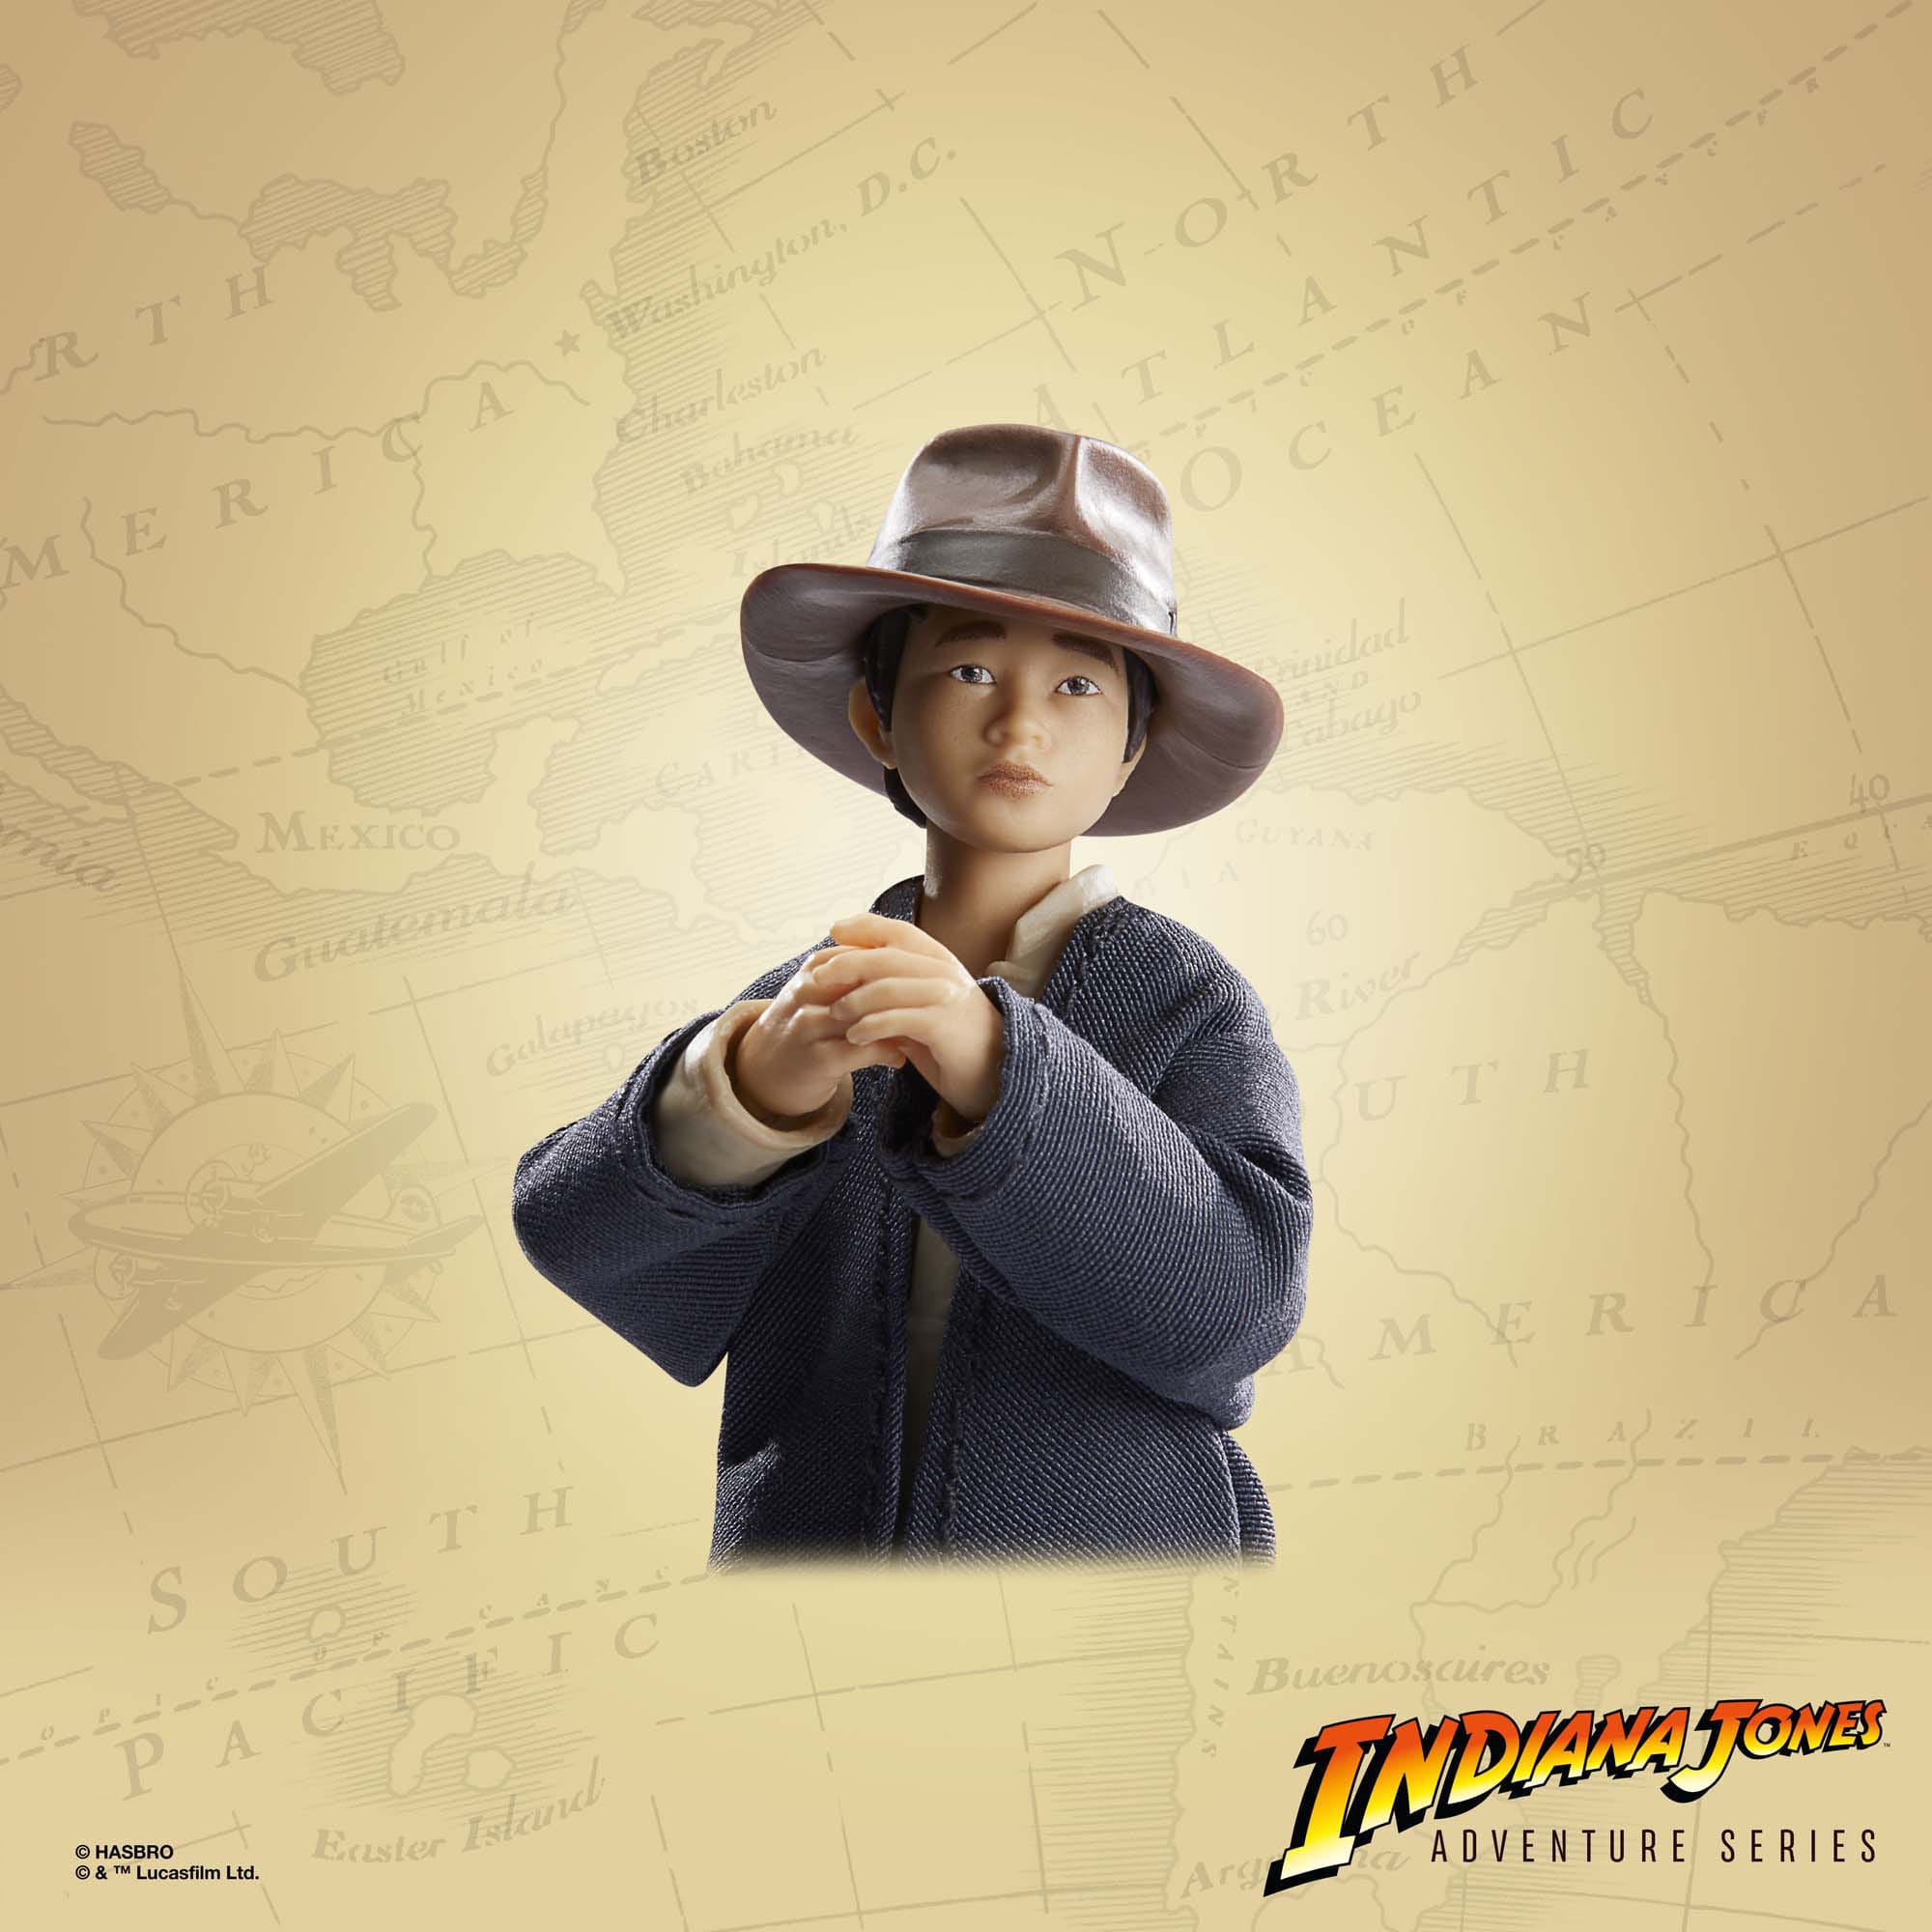 Indiana Jones Adventure Series Actionfigur Short Round (Indiana Jones und der Tempel des Todes) 15 cm F60685X0 5010994167974